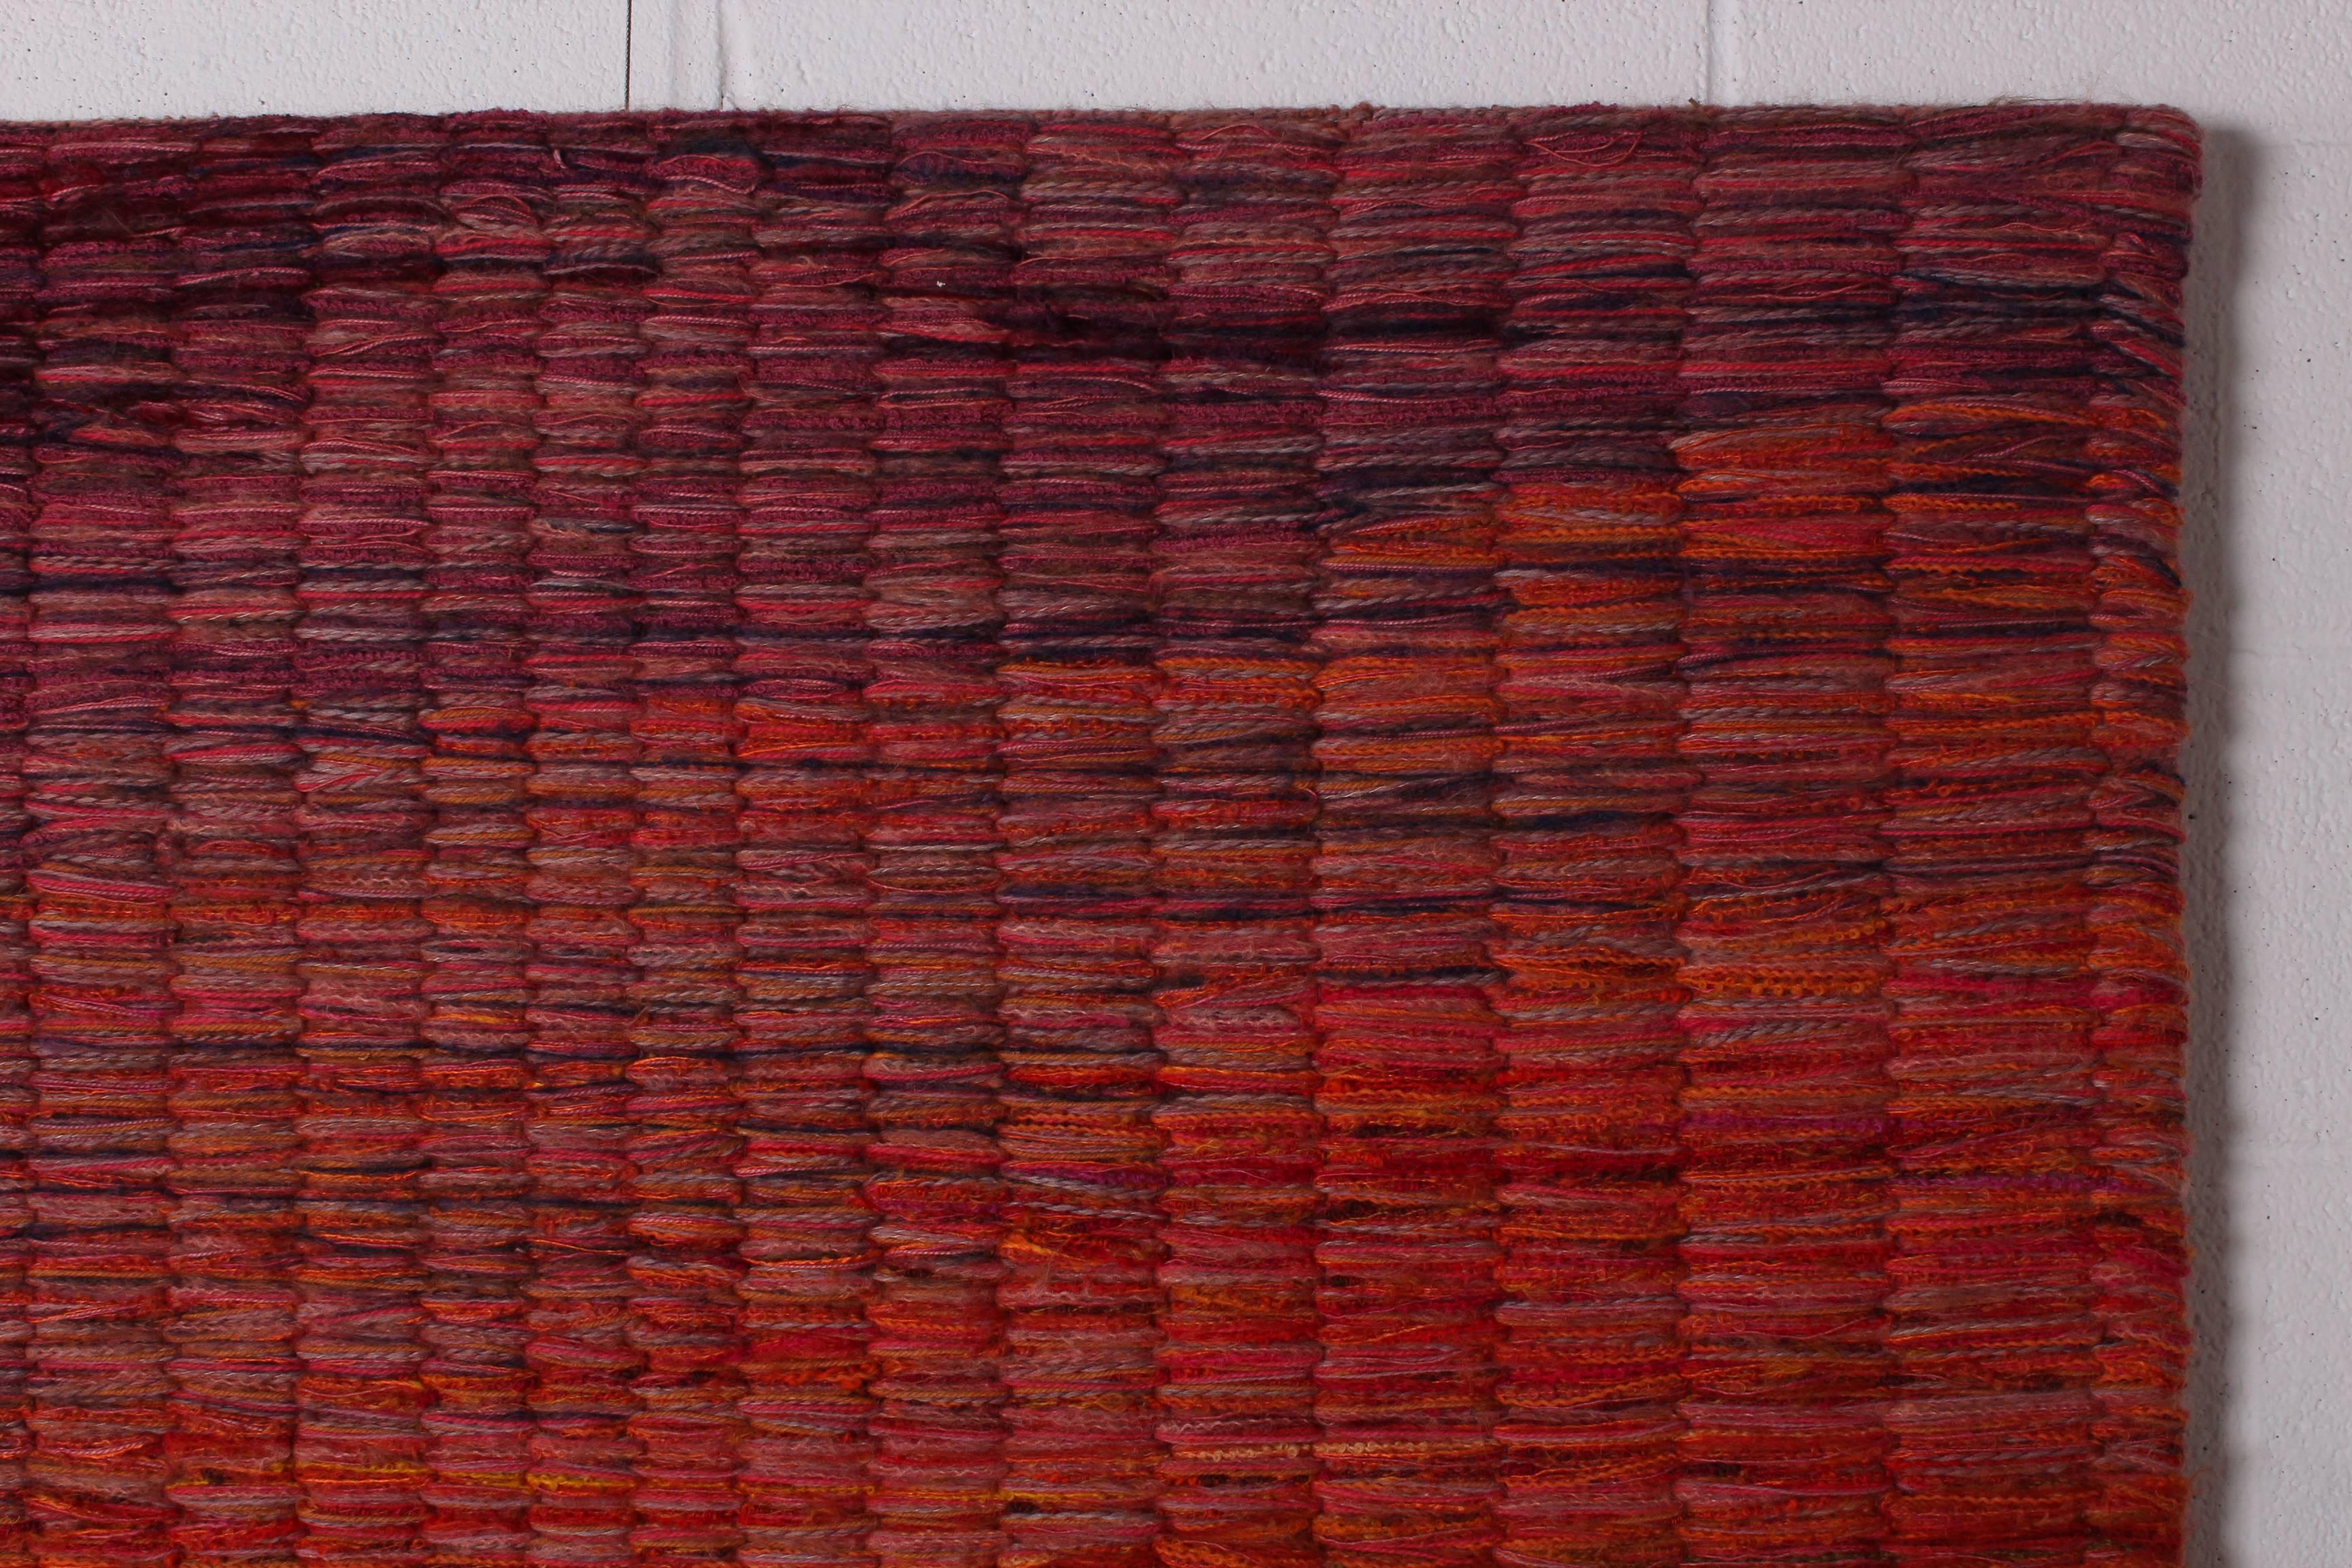 Large Woven Fiber Art by Toni Ettenheim 6